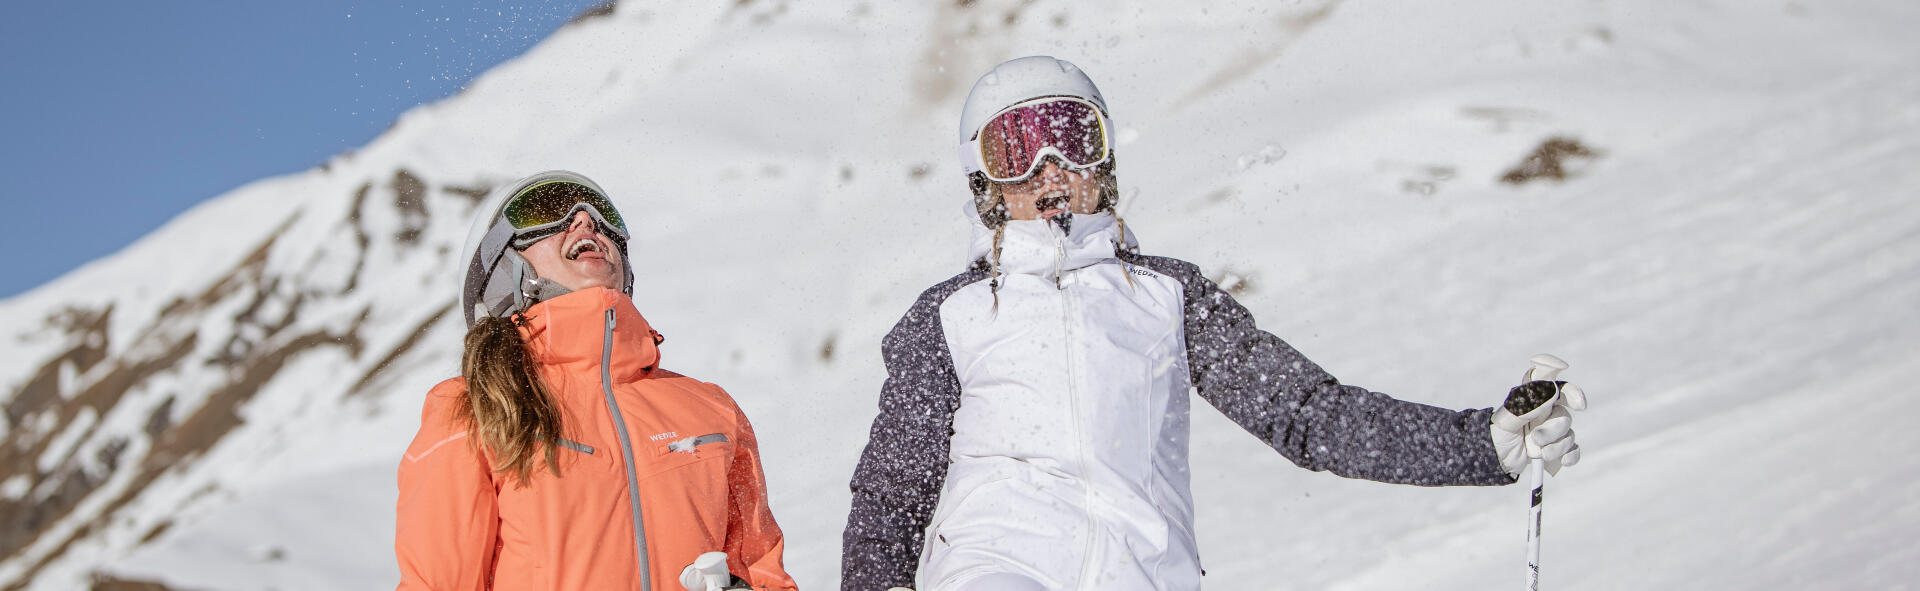 white ski jacket  Ski outfit for women, Skiing outfit, Ski outfit